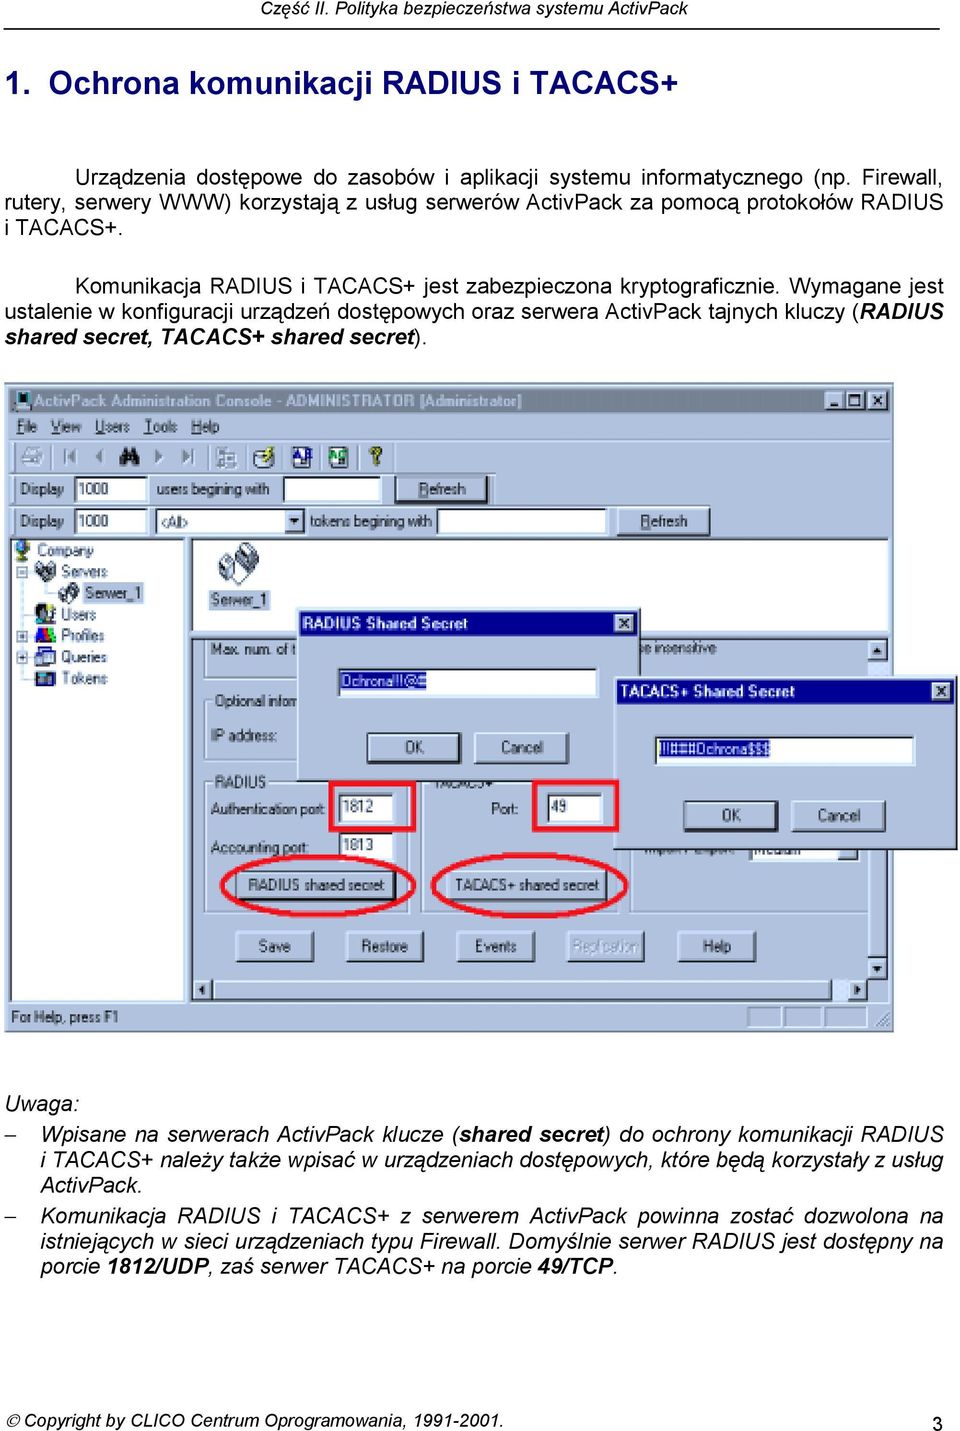 Wymagane jest ustalenie w konfiguracji urządzeń dostępowych oraz serwera ActivPack tajnych kluczy (RADIUS shared secret, TACACS+ shared secret).